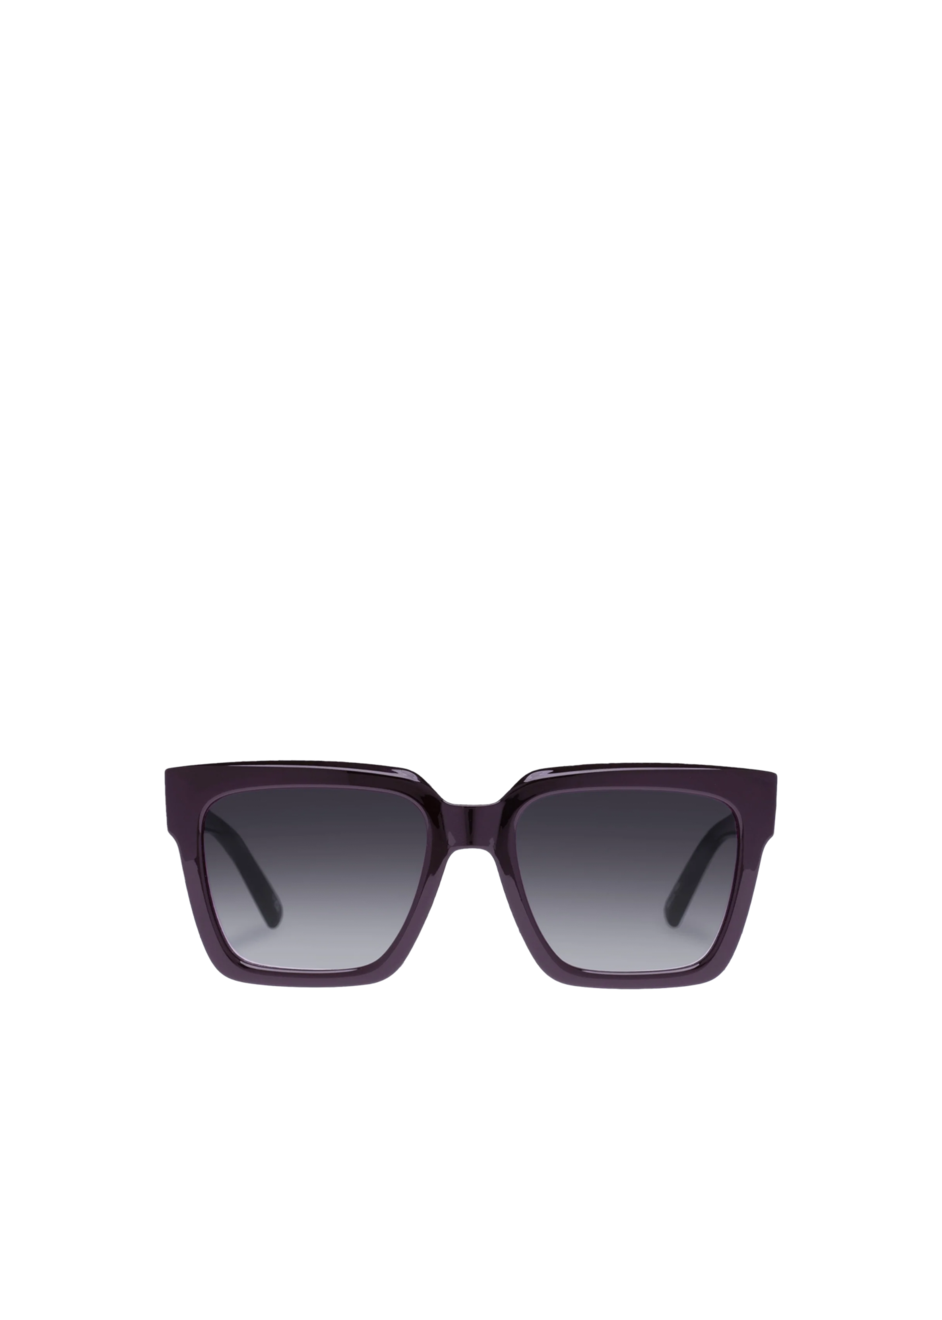 Aanbieding van Large D-frame sunglasses voor 75€ bij Vanilia